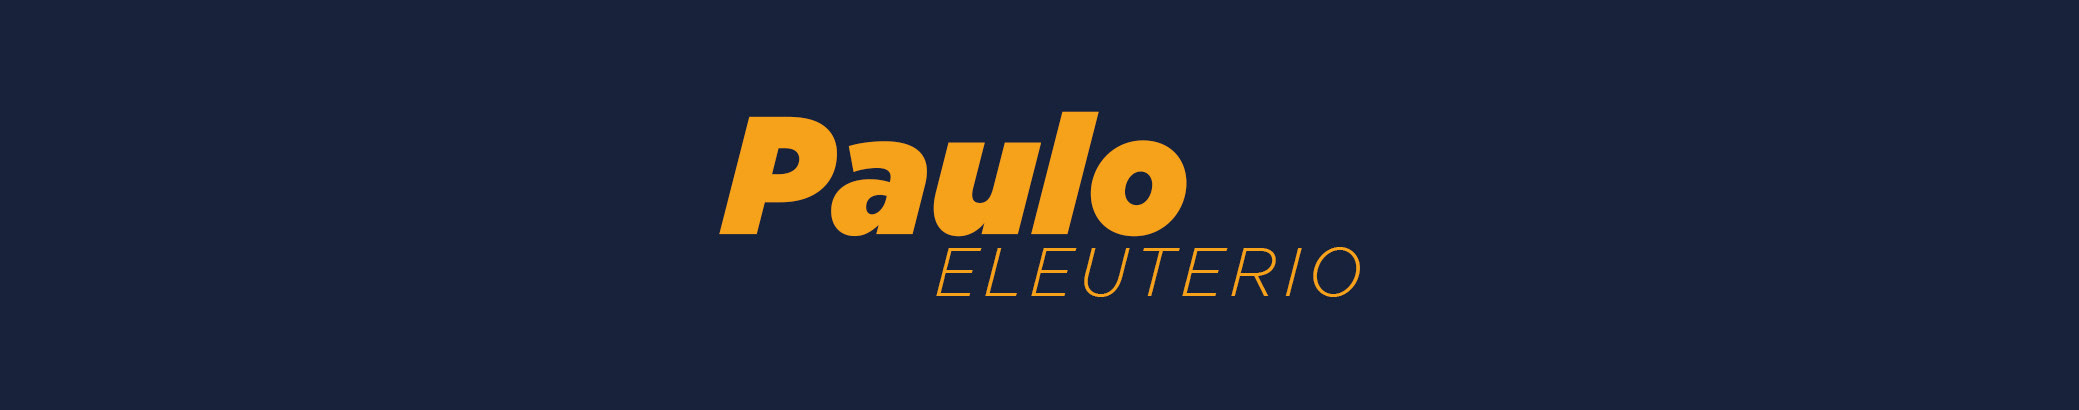 Paulo Eleuterio's profile banner